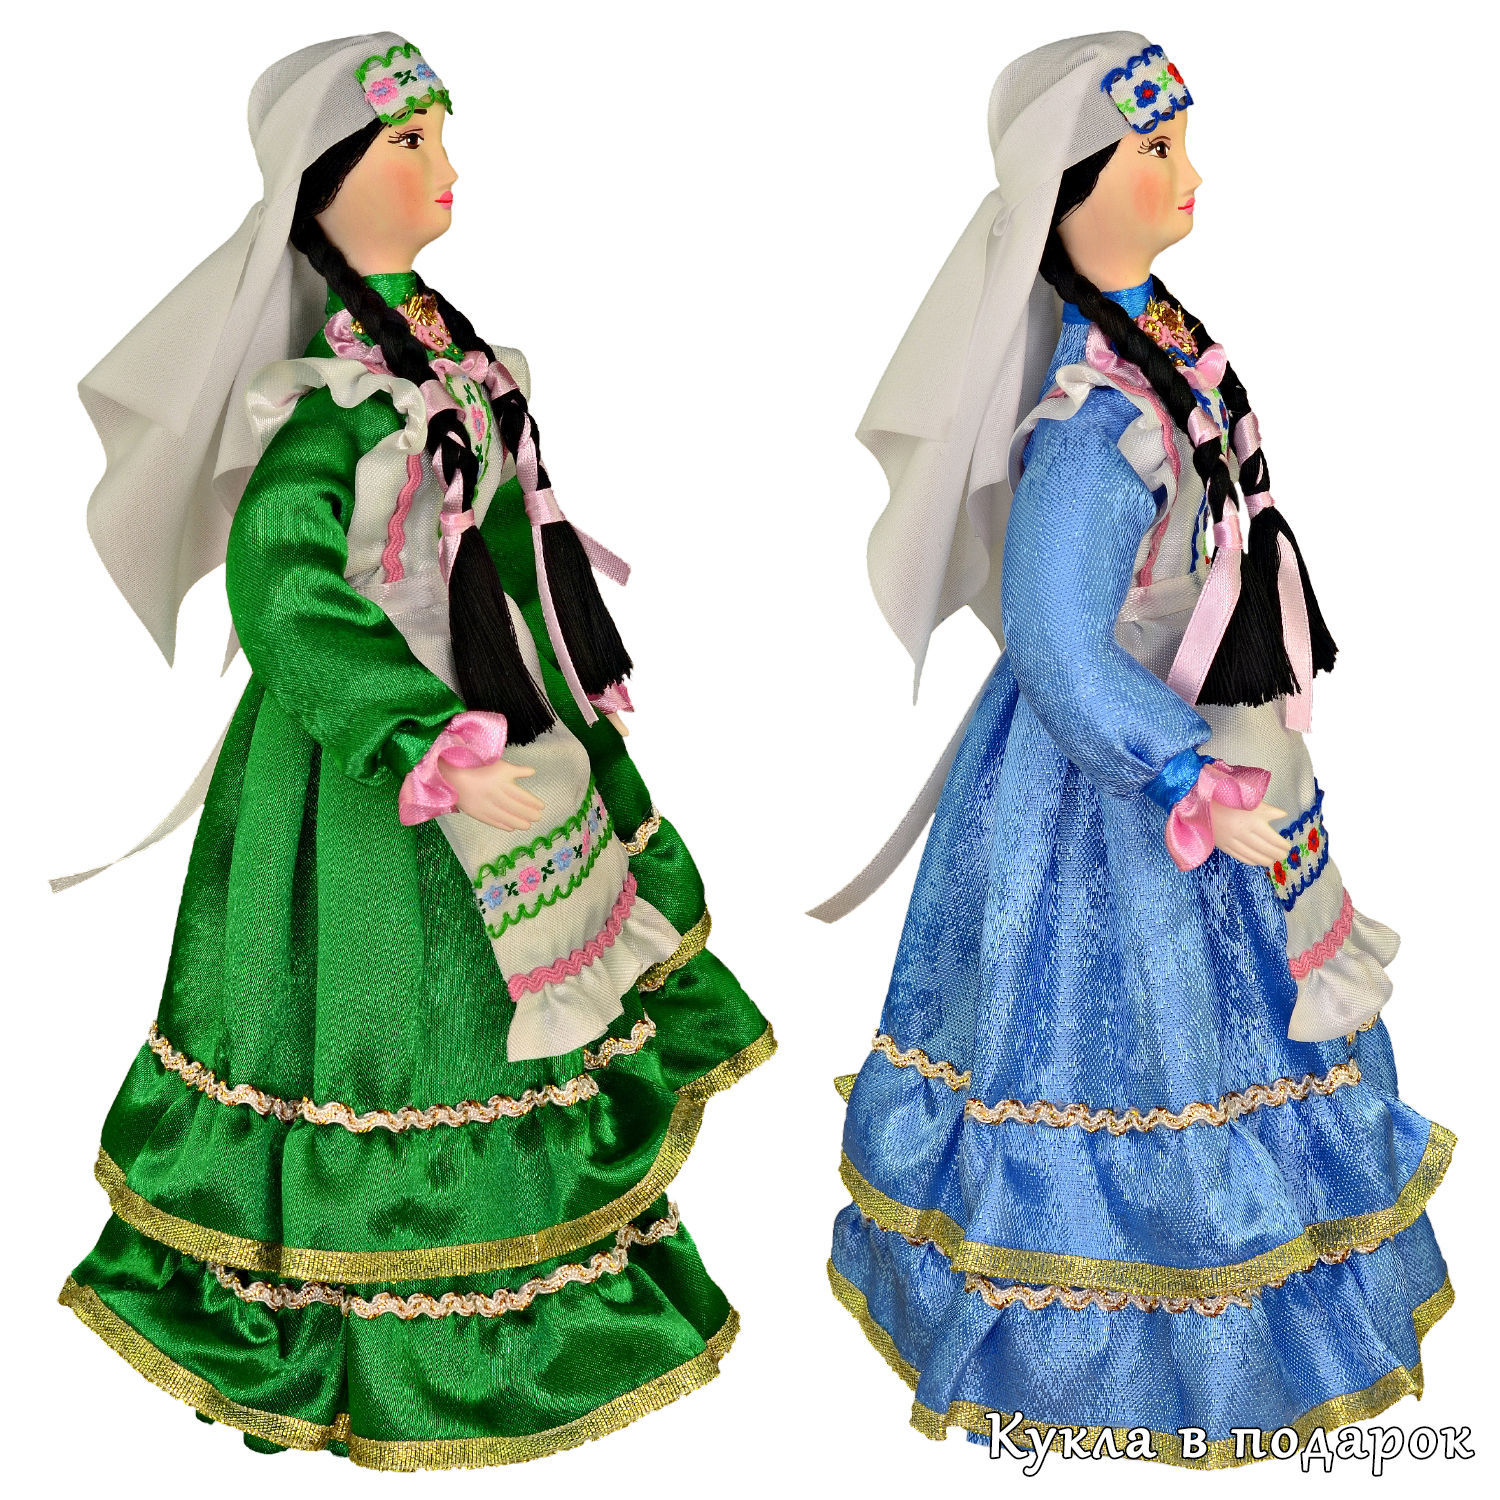 Куклы в татарских костюмах))